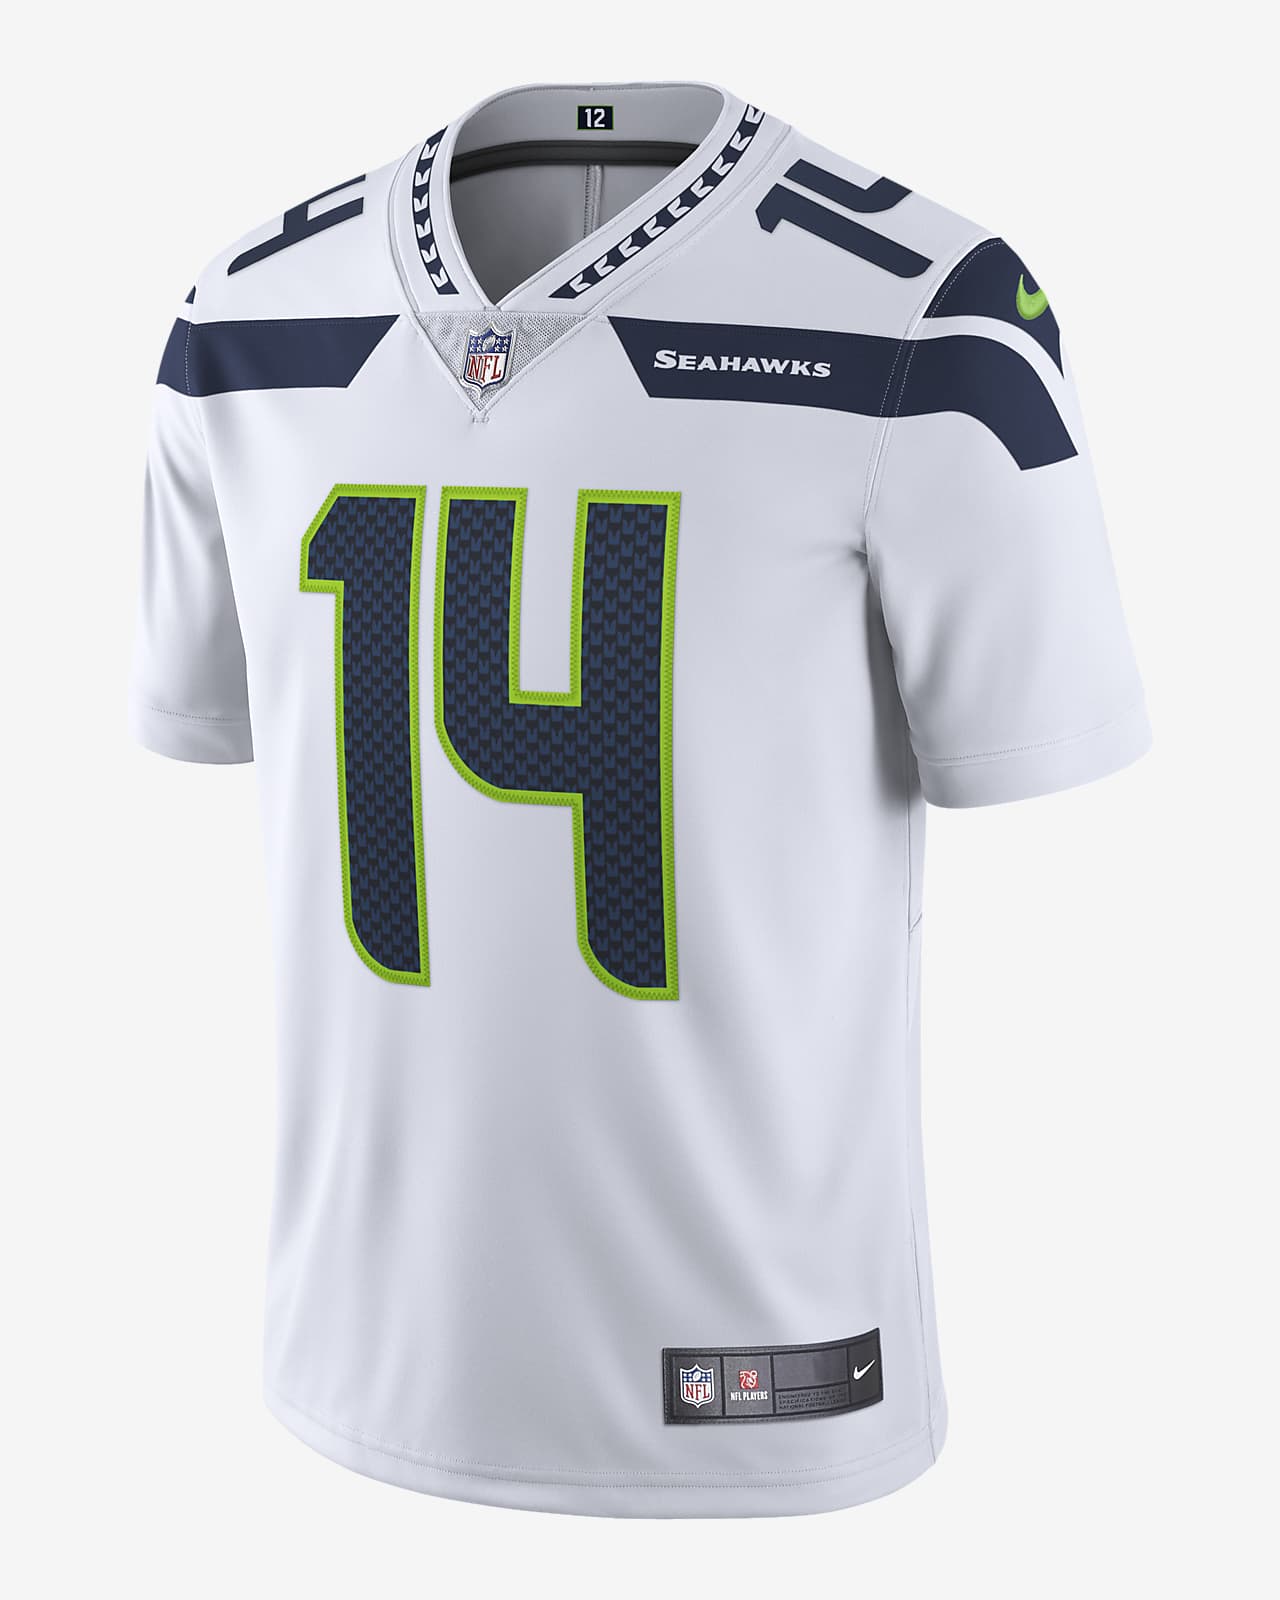 Bienes pompa amortiguar Jersey de fútbol americano edición limitada para hombre NFL Seattle Seahawks  Nike Vapor Untouchable (DK Metcalf). Nike.com